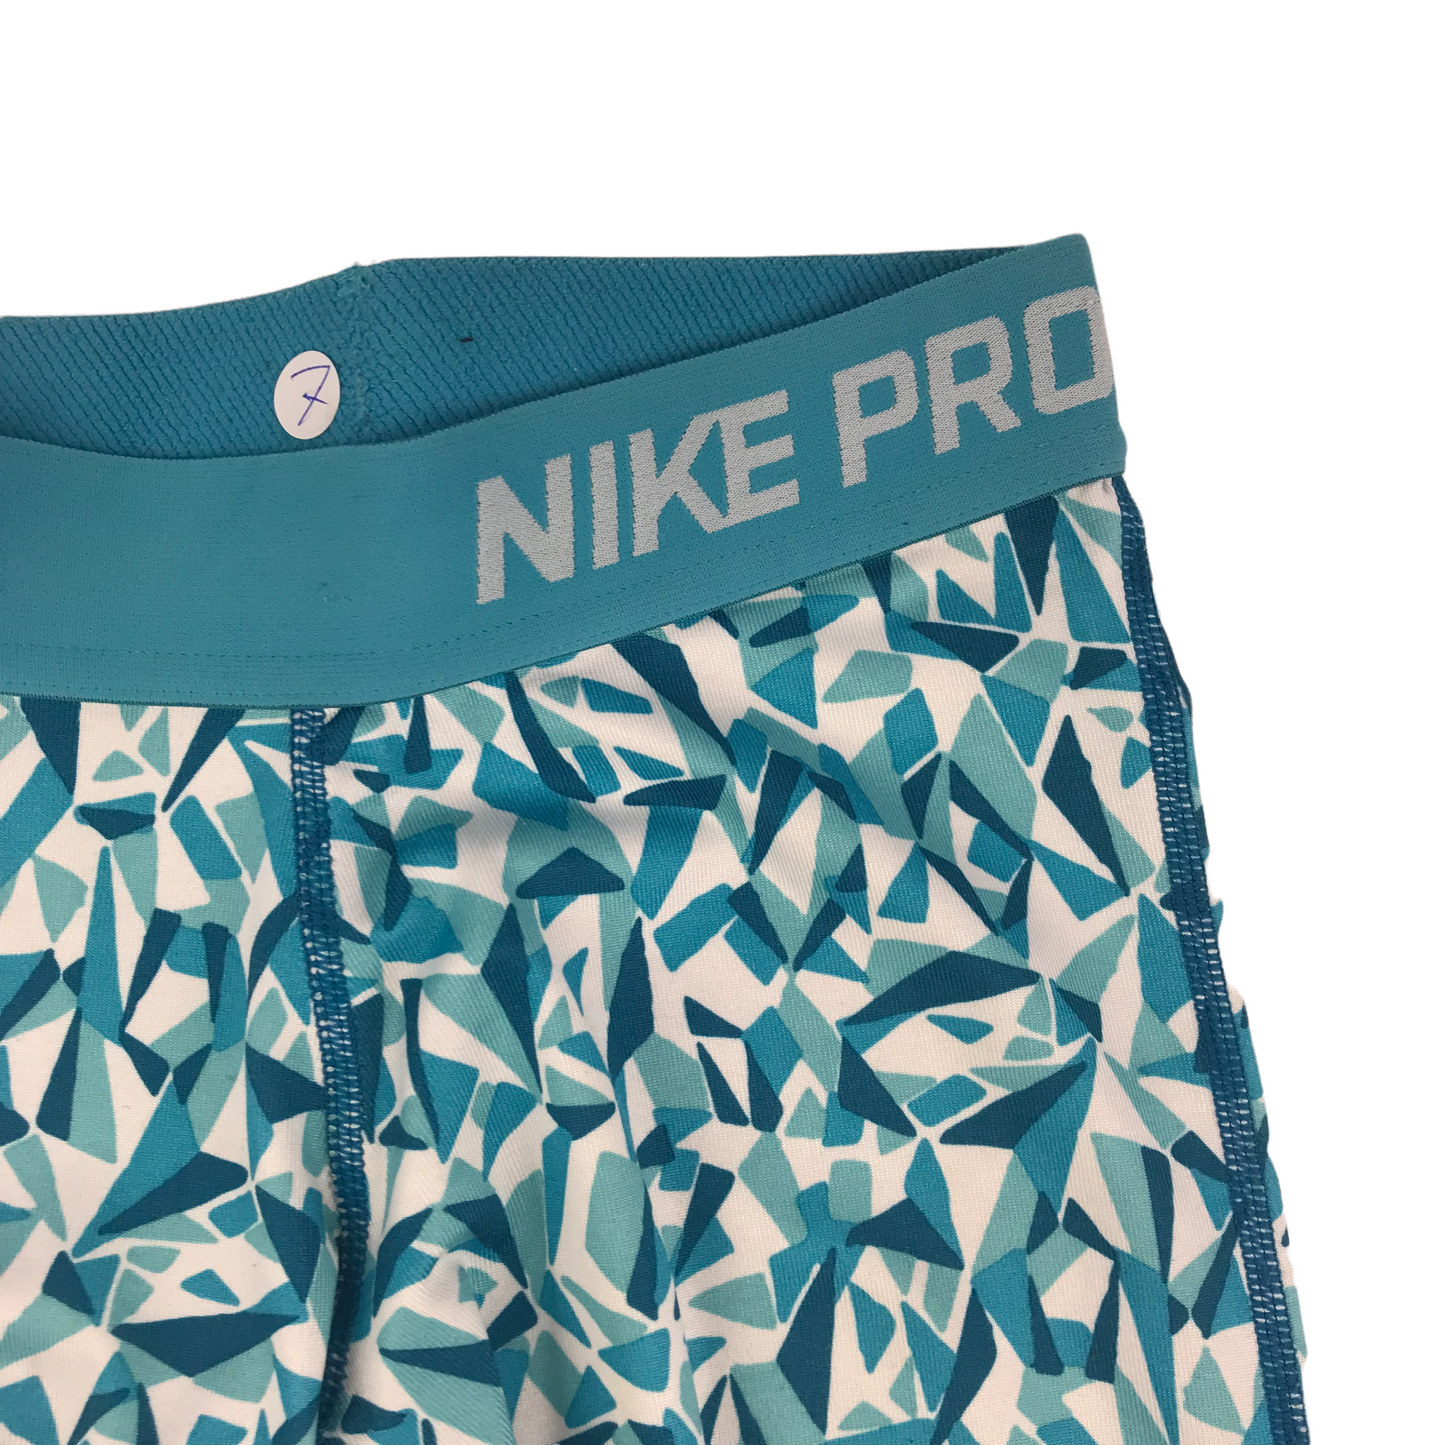 Nike Pro Blue Pattern 3/4 Sport Leggings Age 7